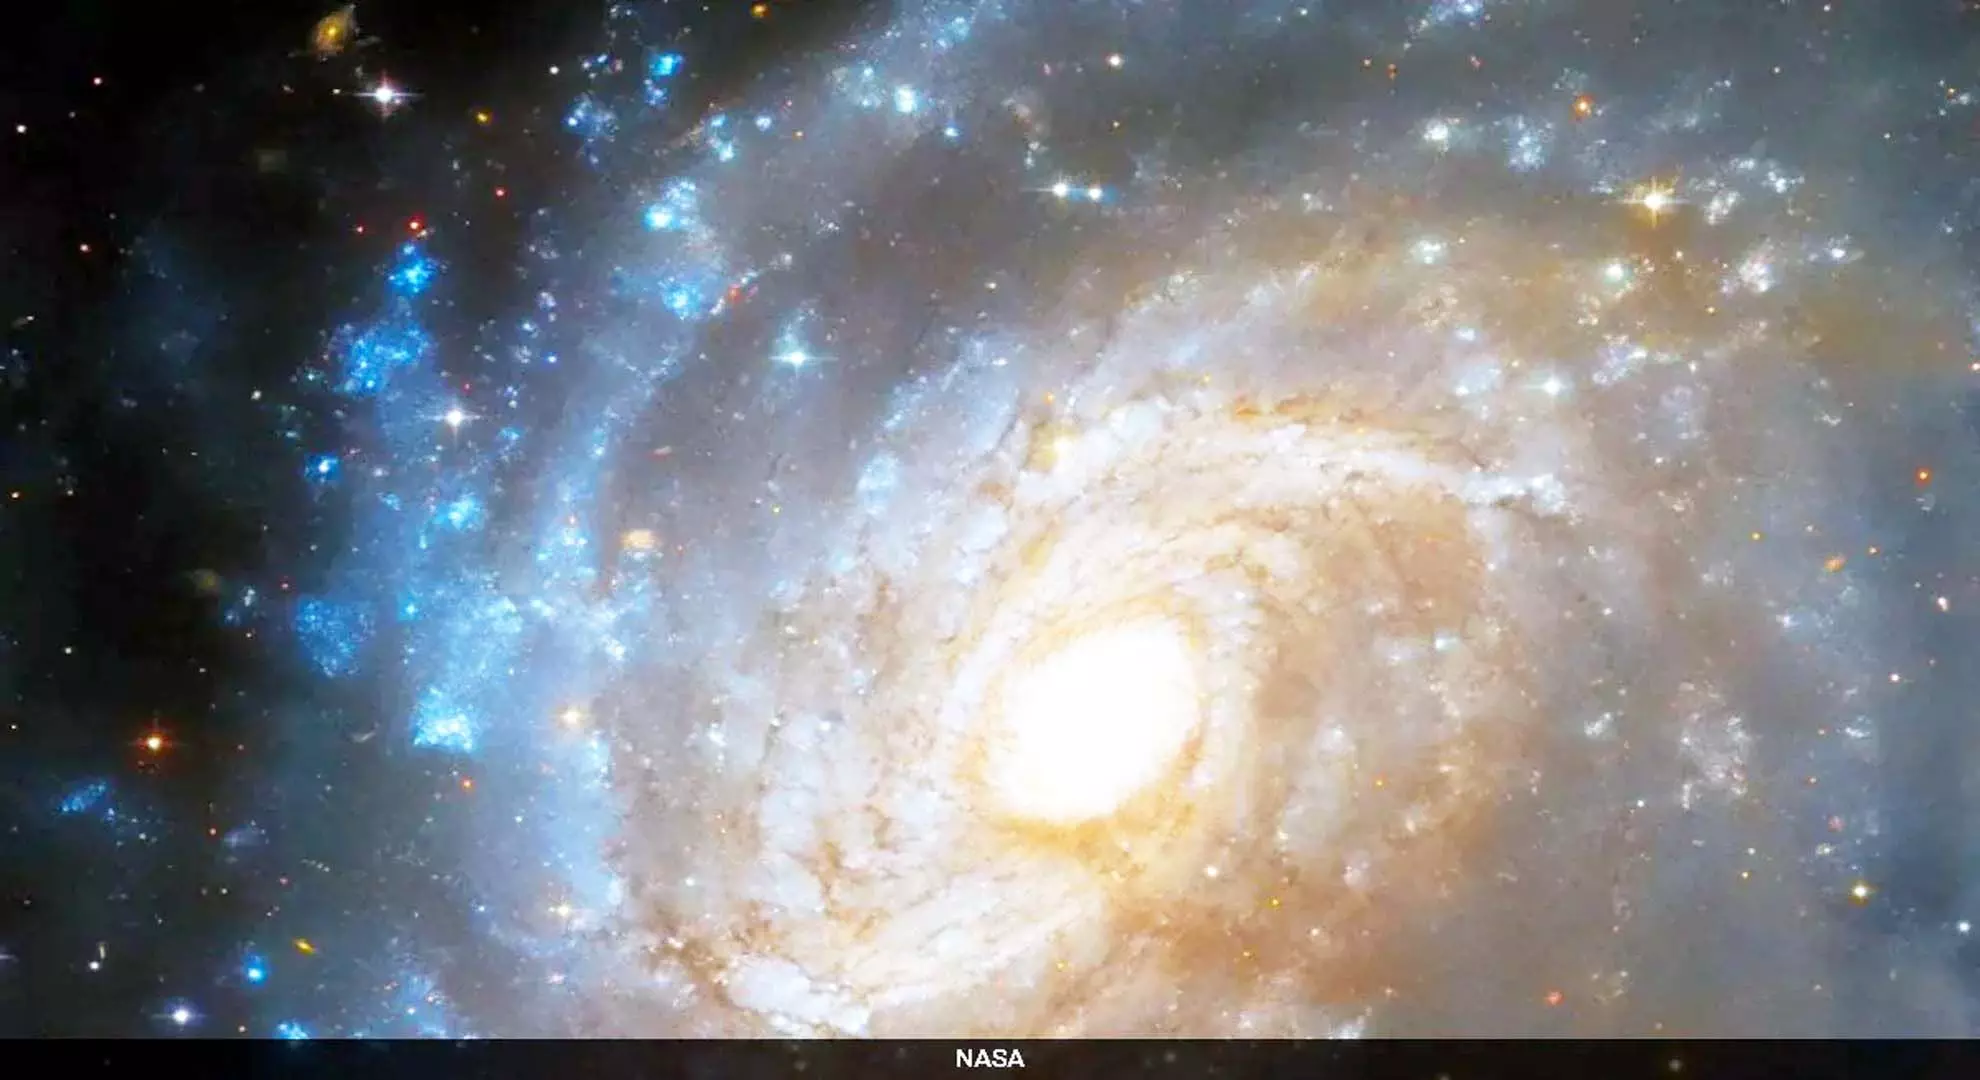 हबल टेलीस्कोप ने गहरे धूल के बादल में छिपी एक आकाशगंगा को देखा